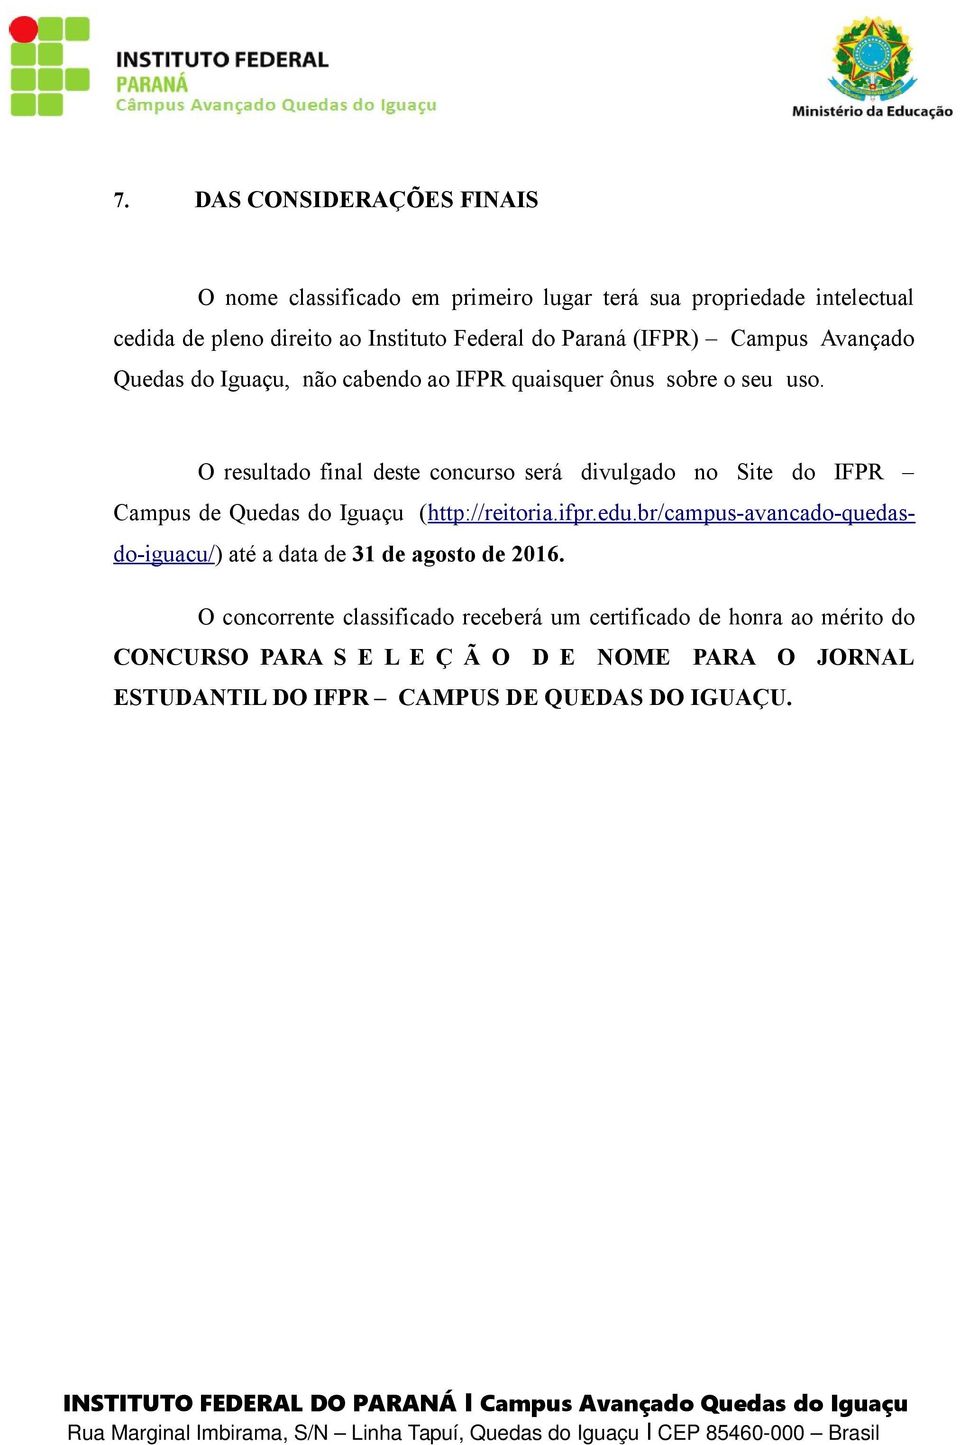 O resultado final deste concurso será divulgado no Site do IFPR Campus de Quedas do Iguaçu (http://reitoria.ifpr.edu.